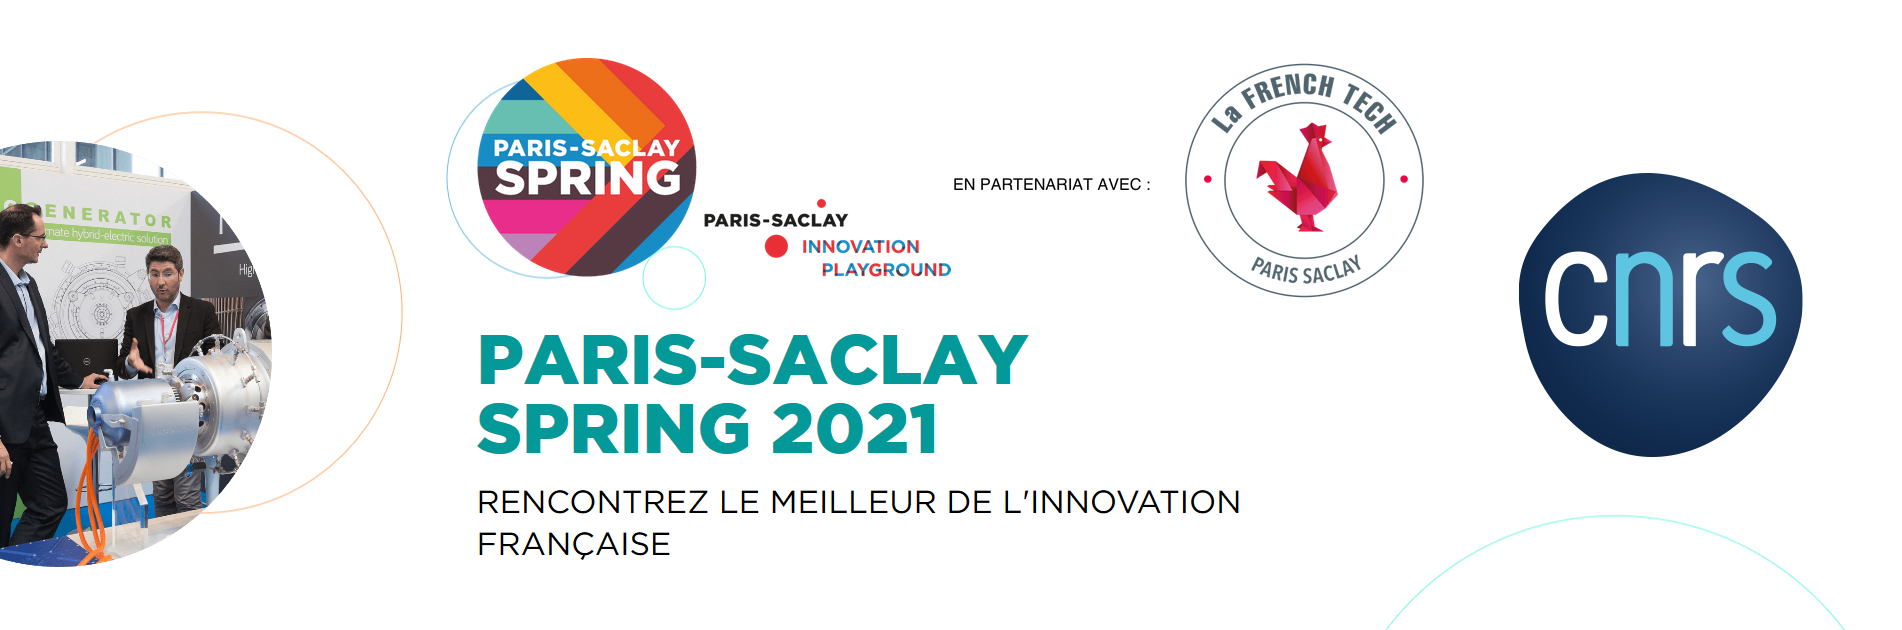 Paris-Saclay SPRING 2021